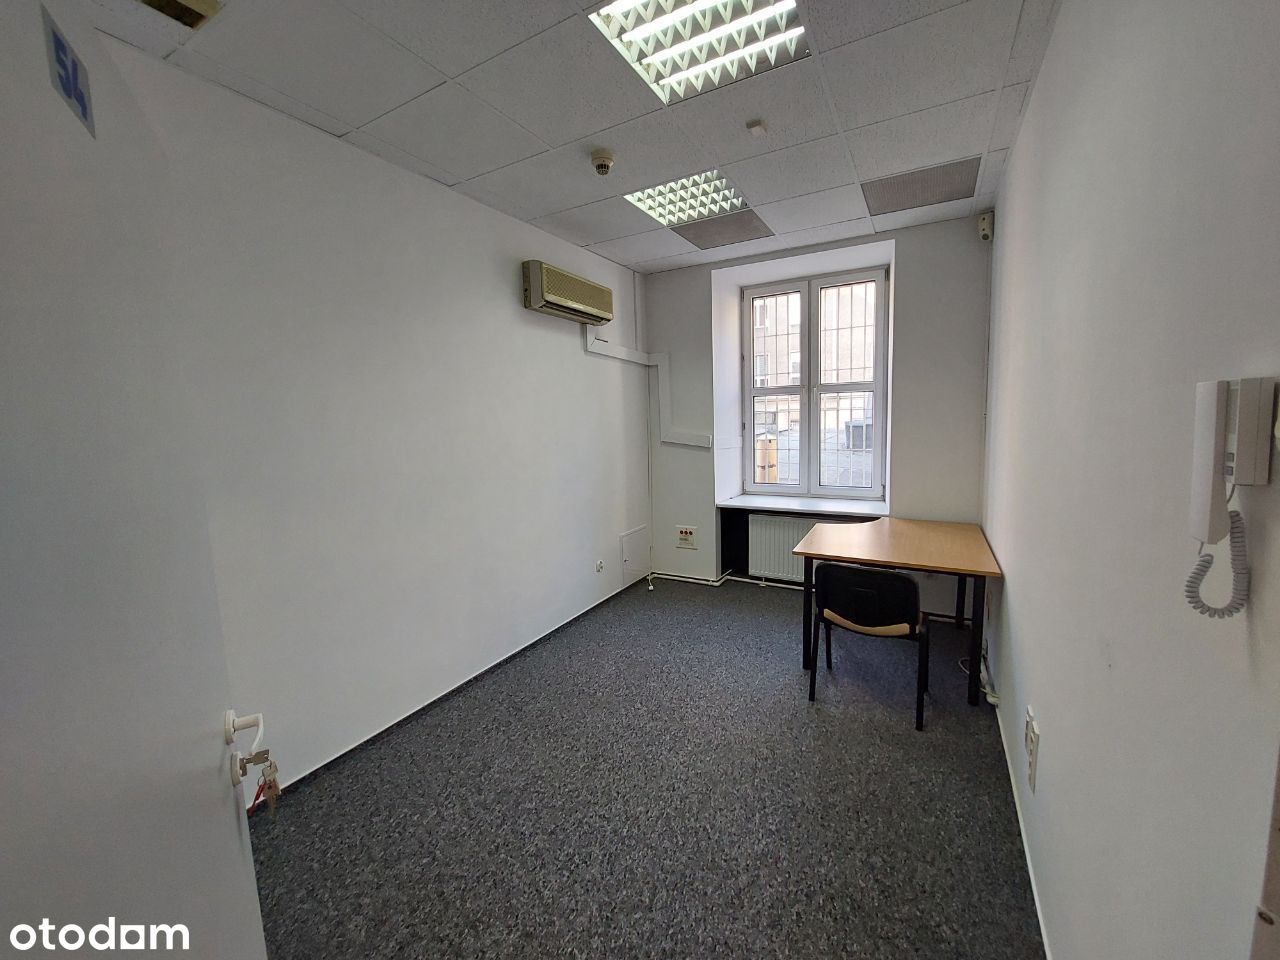 Lokal biurowy 15 m2, możliwy parking Kościuszki 3